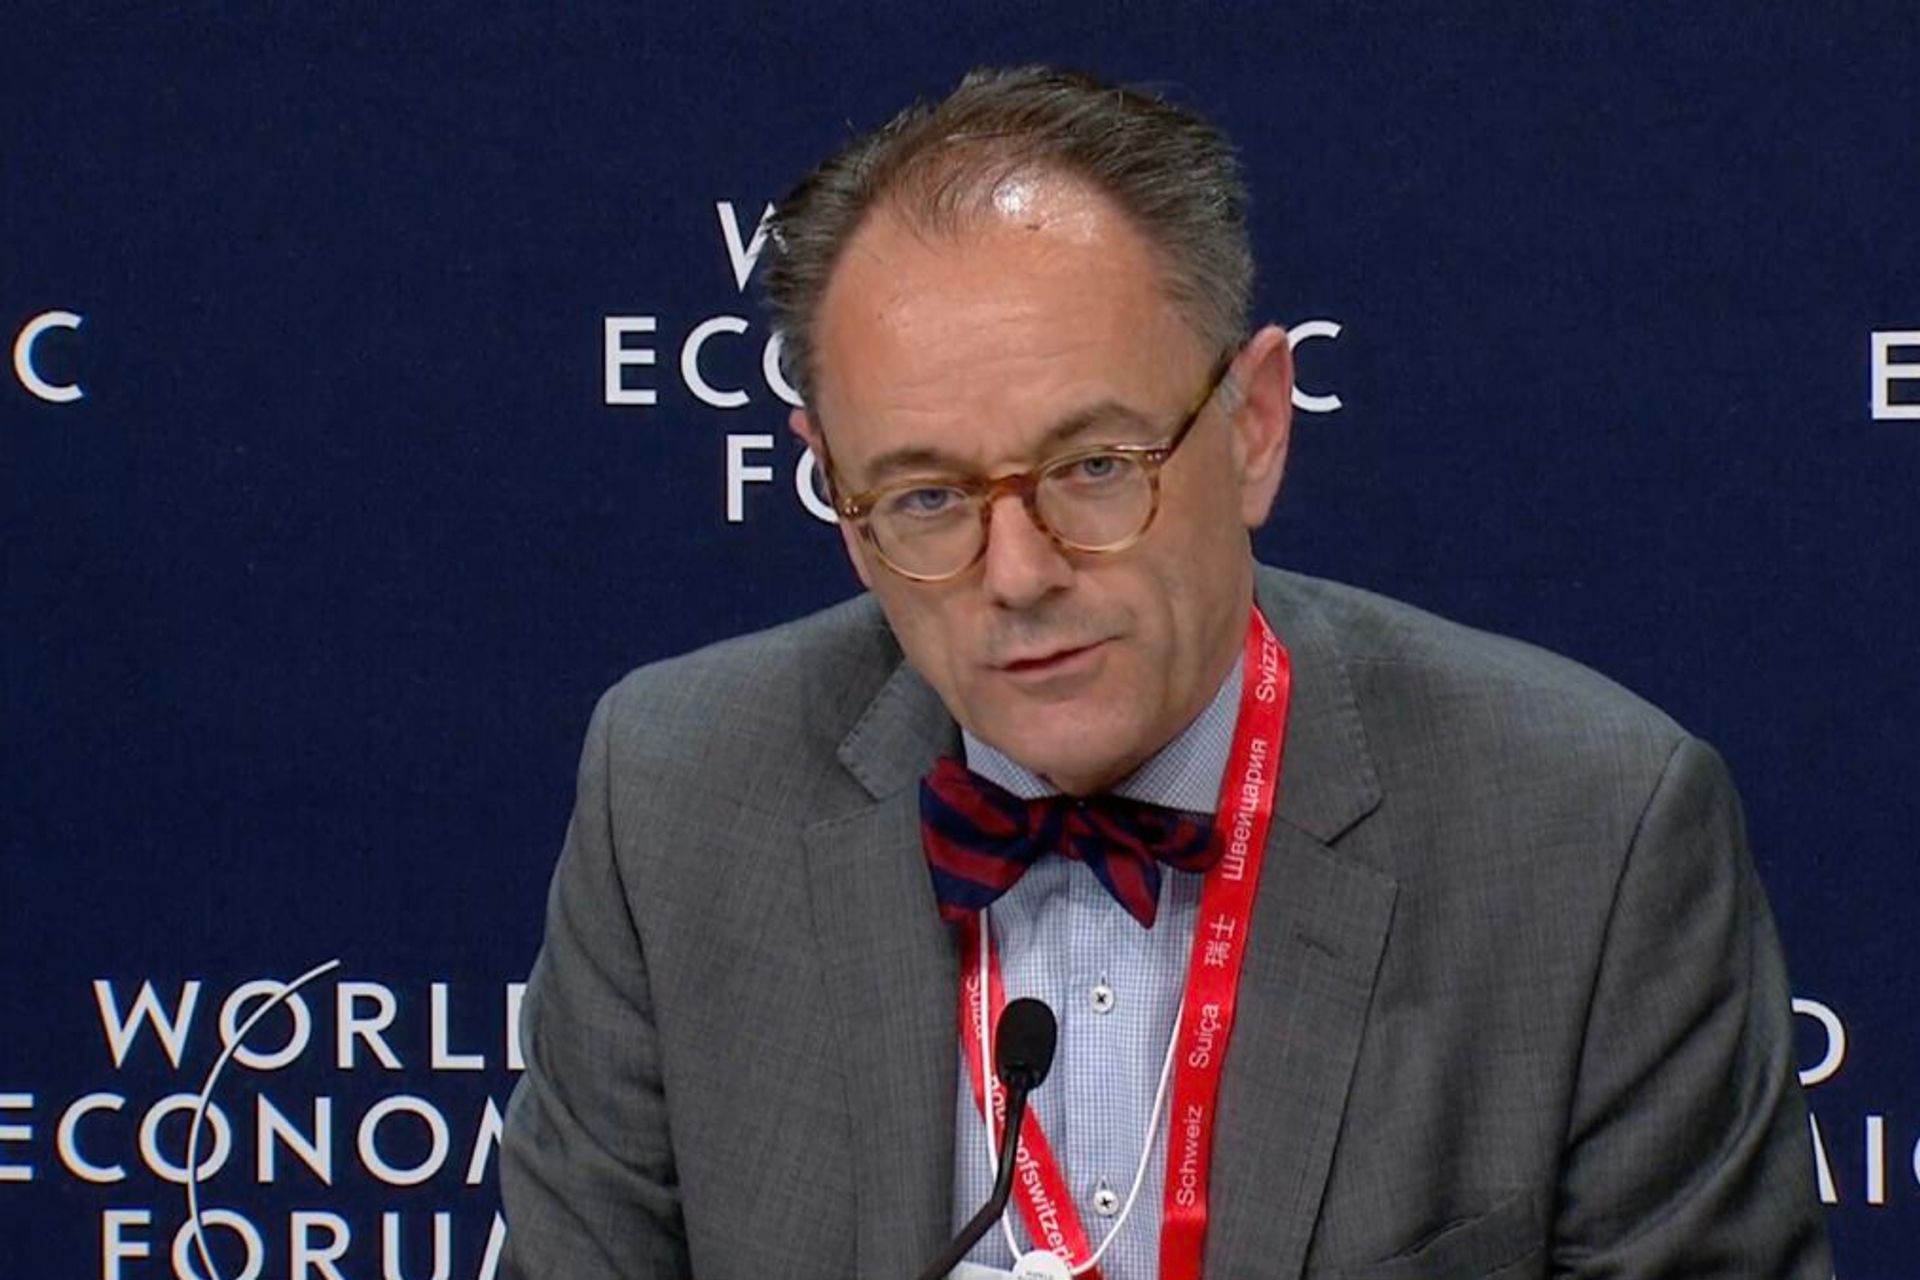 Ο Benedikt Wechsler είναι Πρέσβης και Επικεφαλής του Τμήματος Ψηφιοποίησης του Ομοσπονδιακού Υπουργείου Εξωτερικών (FDFA) της Ελβετικής Συνομοσπονδίας